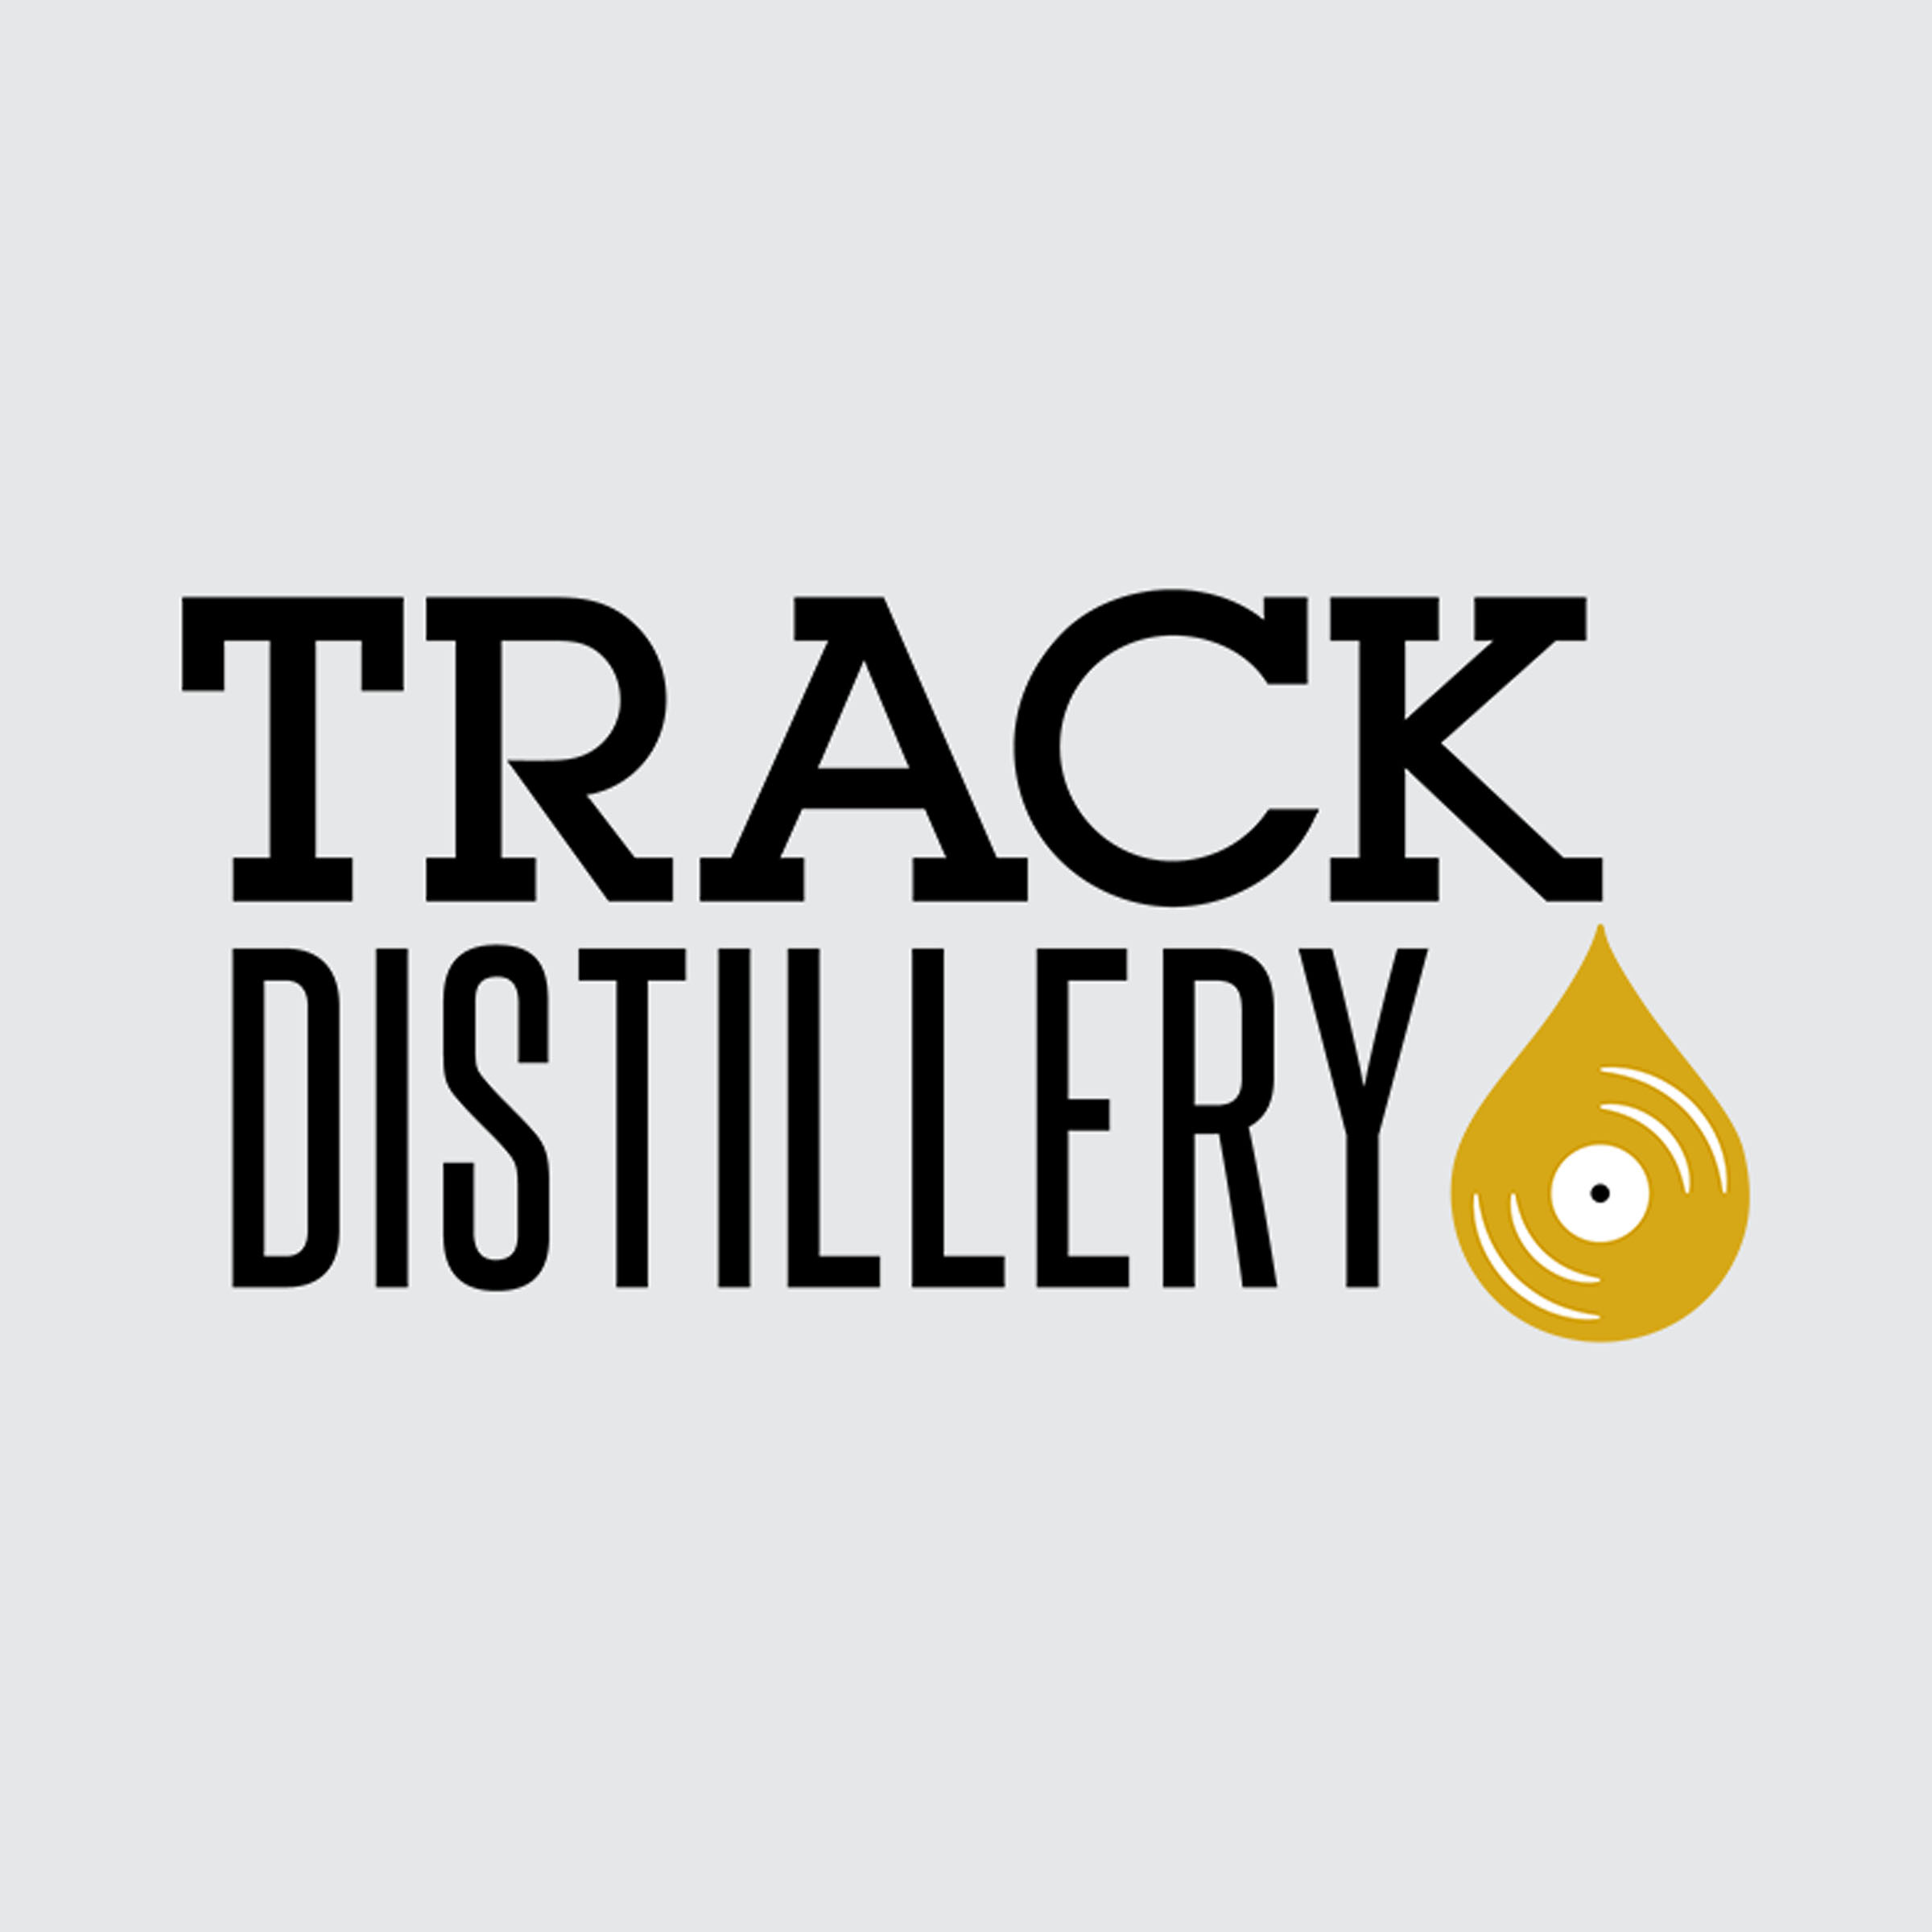 Track Distillery